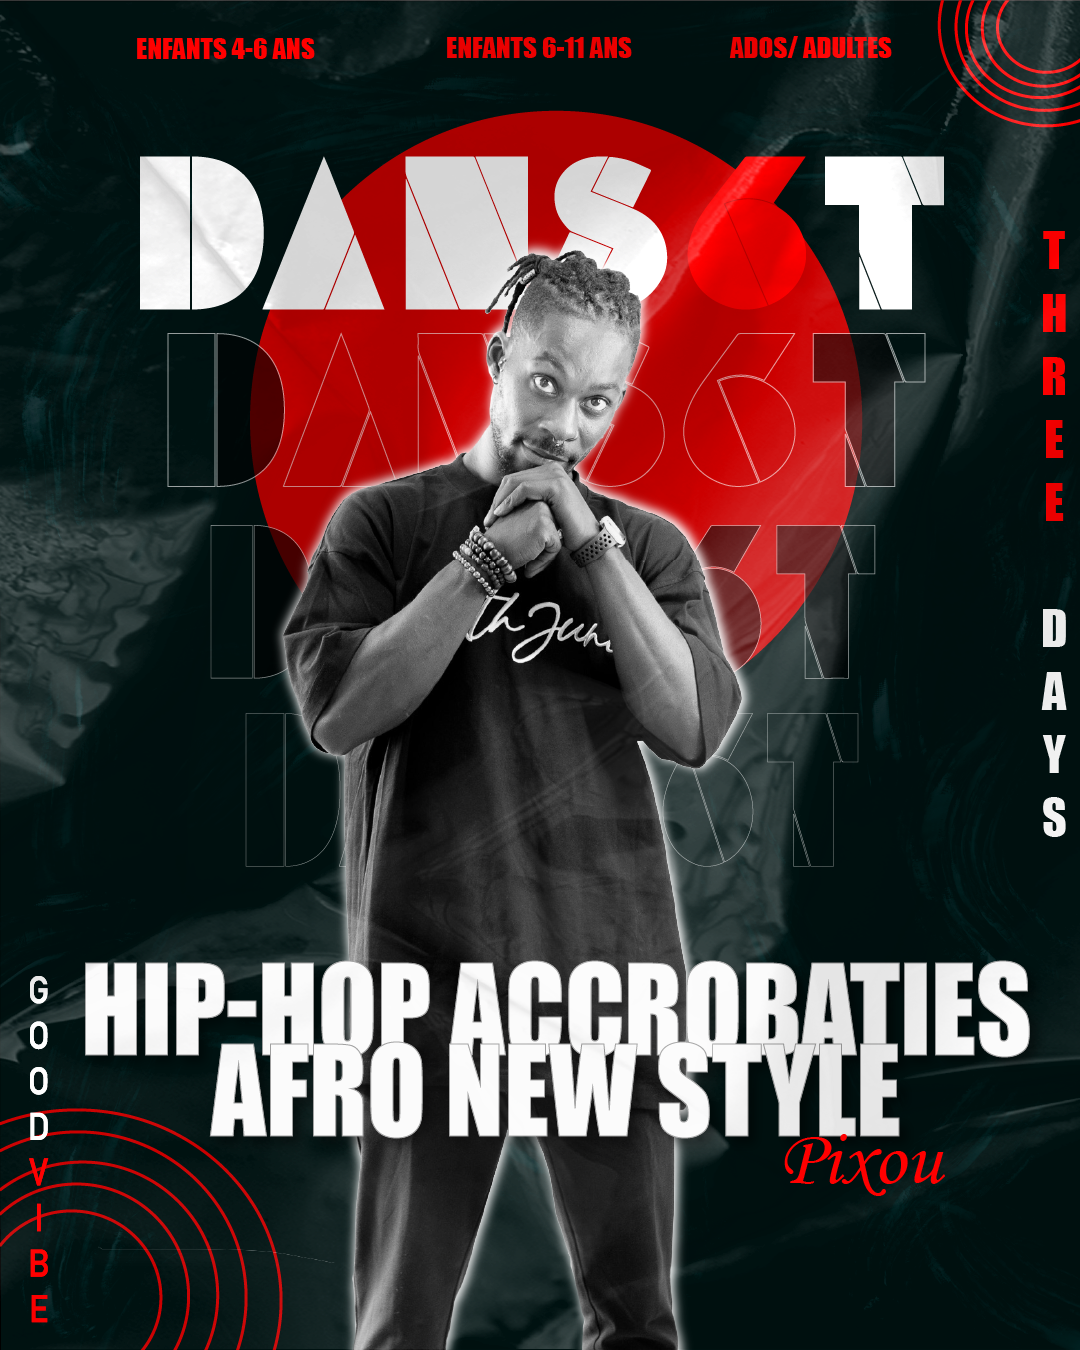 Visuel pour les cours de Pixou en Hip-hop, Acrobaties, capoeira, Afro new style à Dans6T